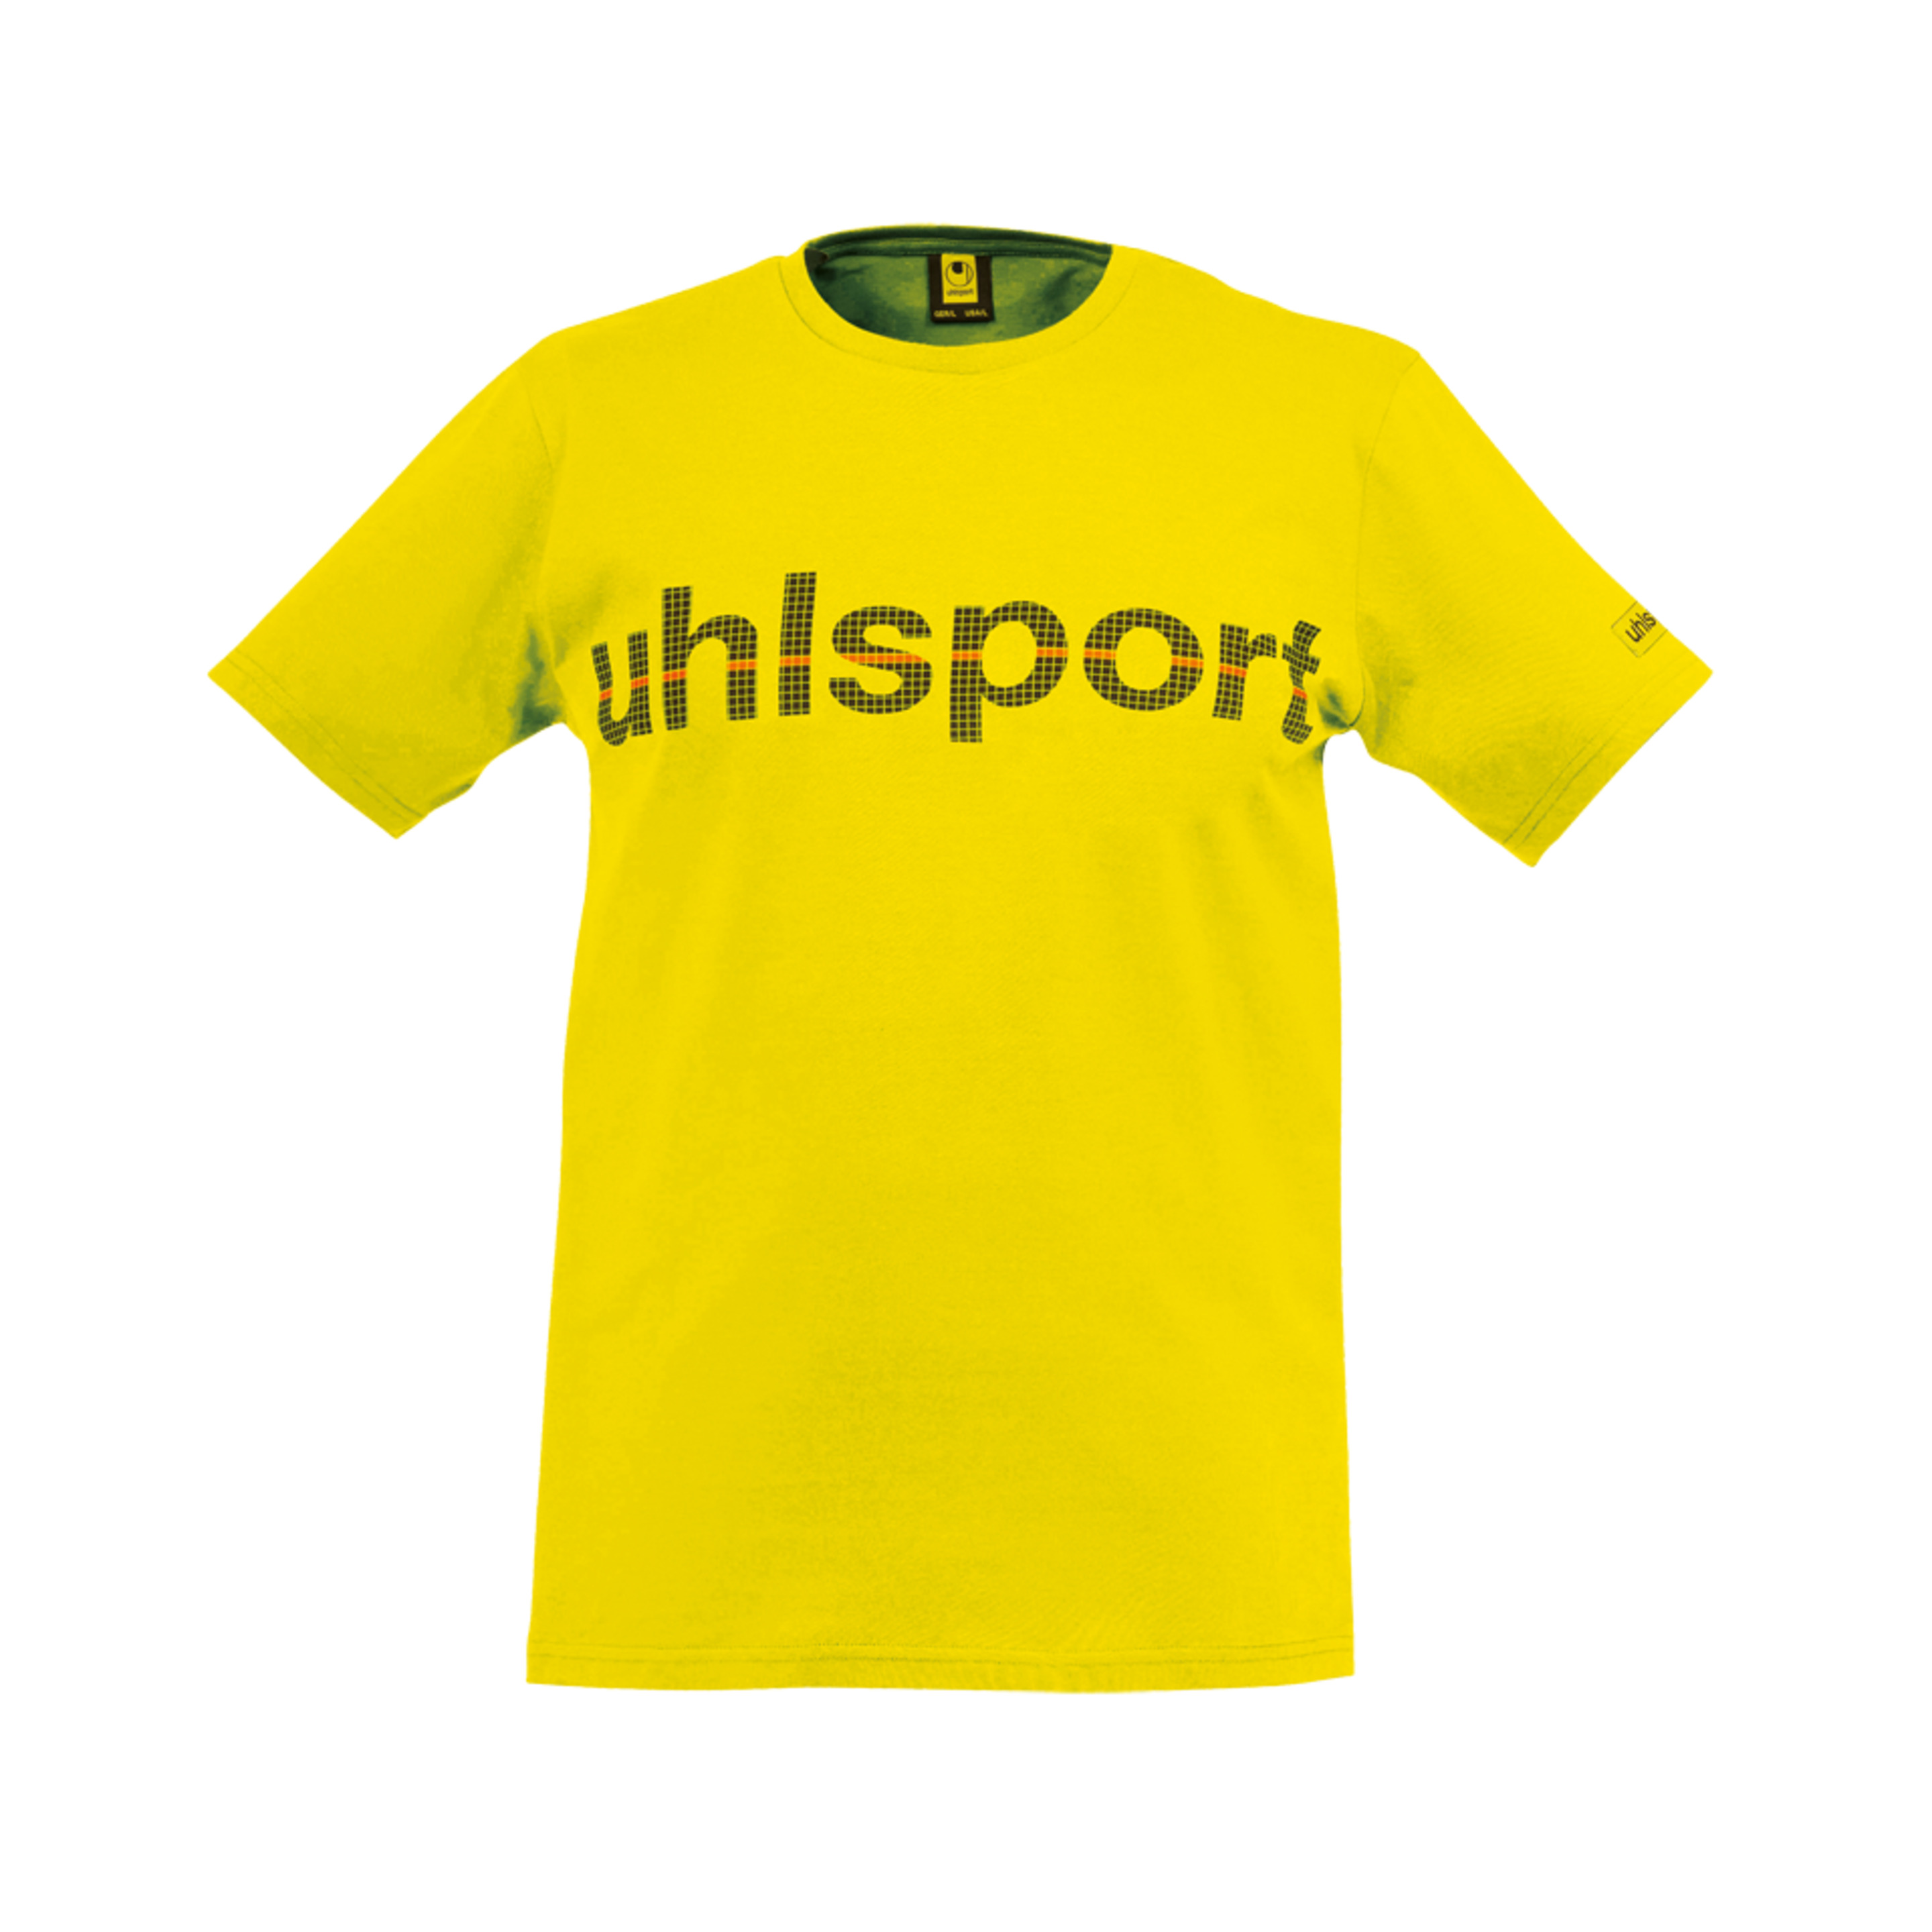 Essential Promo Camiseta Amarillo Maiz Uhlsport - amarillo - 